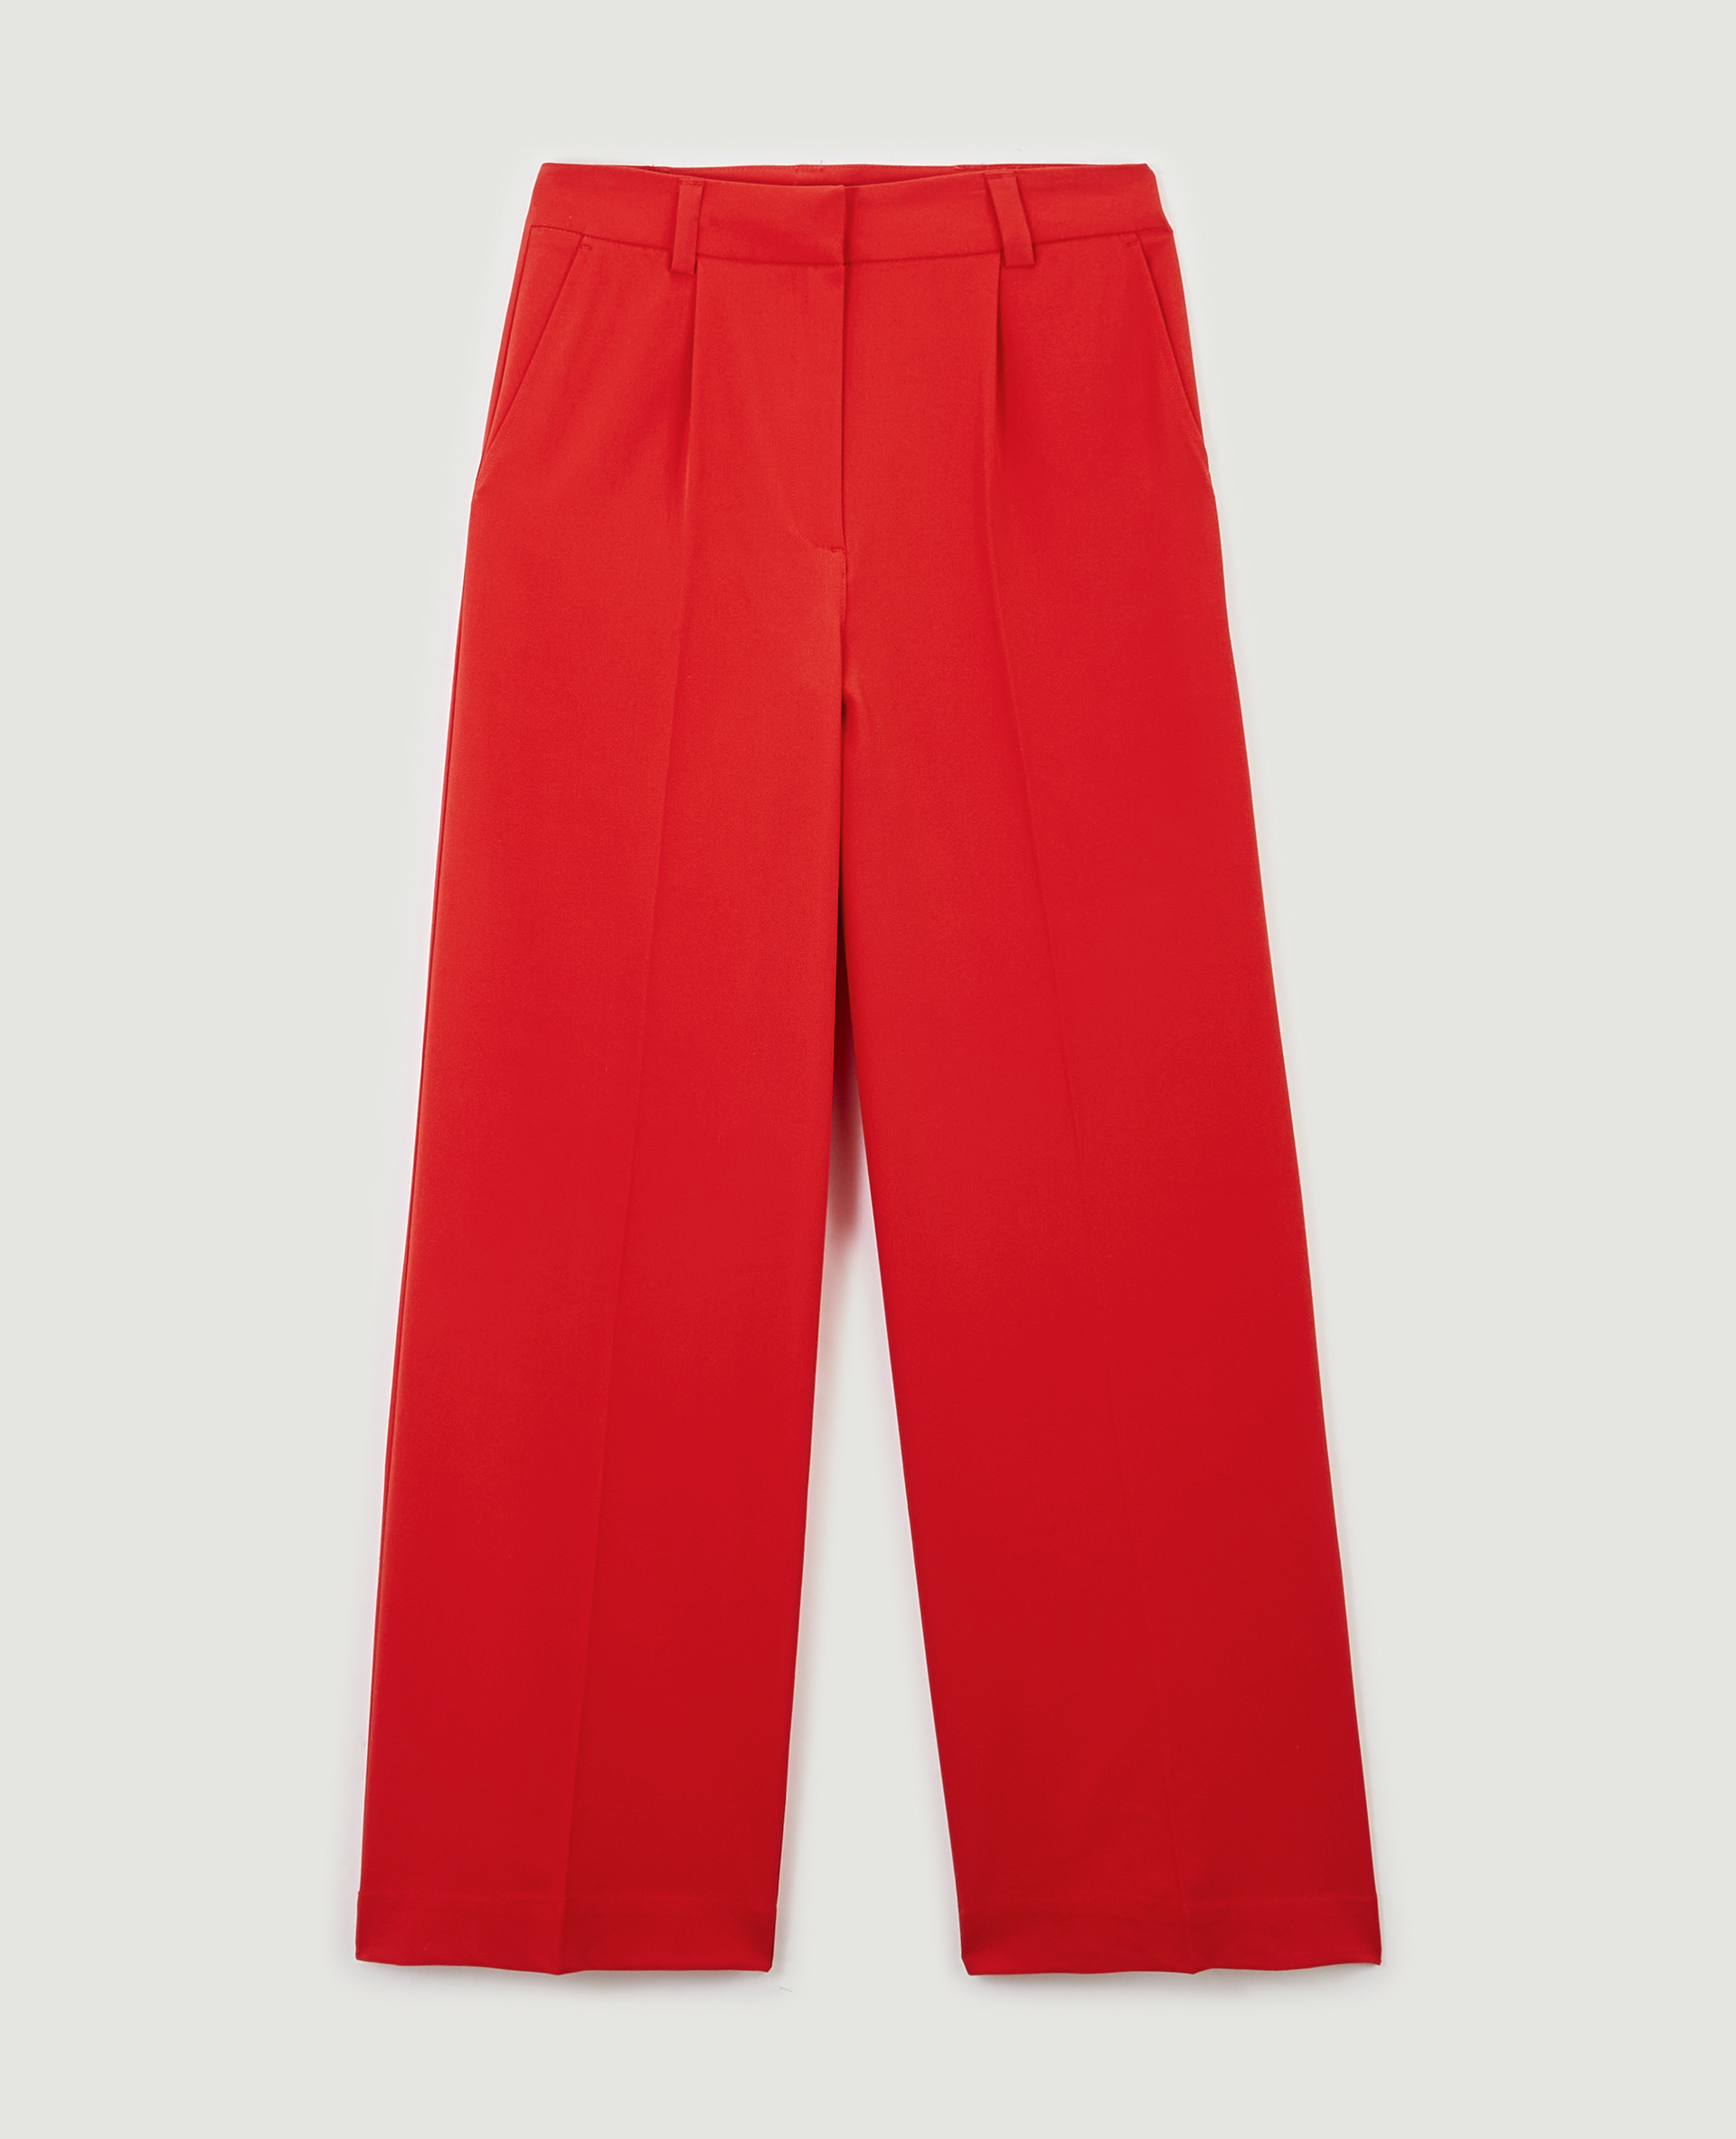 Pantalon large taille haute rouge - Pimkie